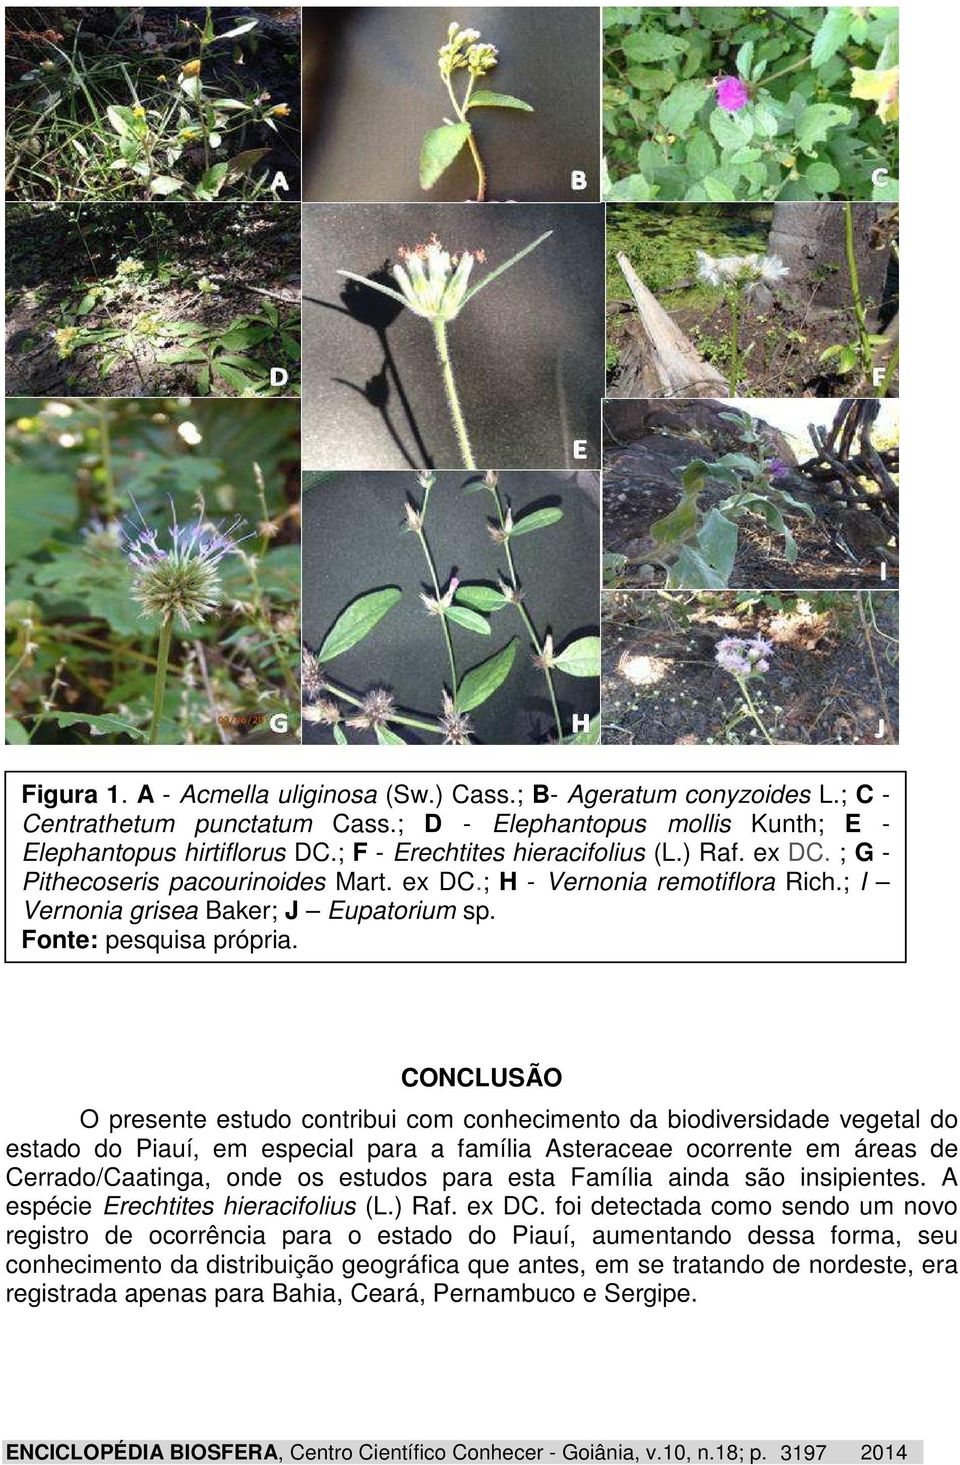 CONCLUSÃO O presente estudo contribui com conhecimento da biodiversidade vegetal do estado do Piauí, em especial para a família Asteraceae ocorrente em áreas de Cerrado/Caatinga, onde os estudos para